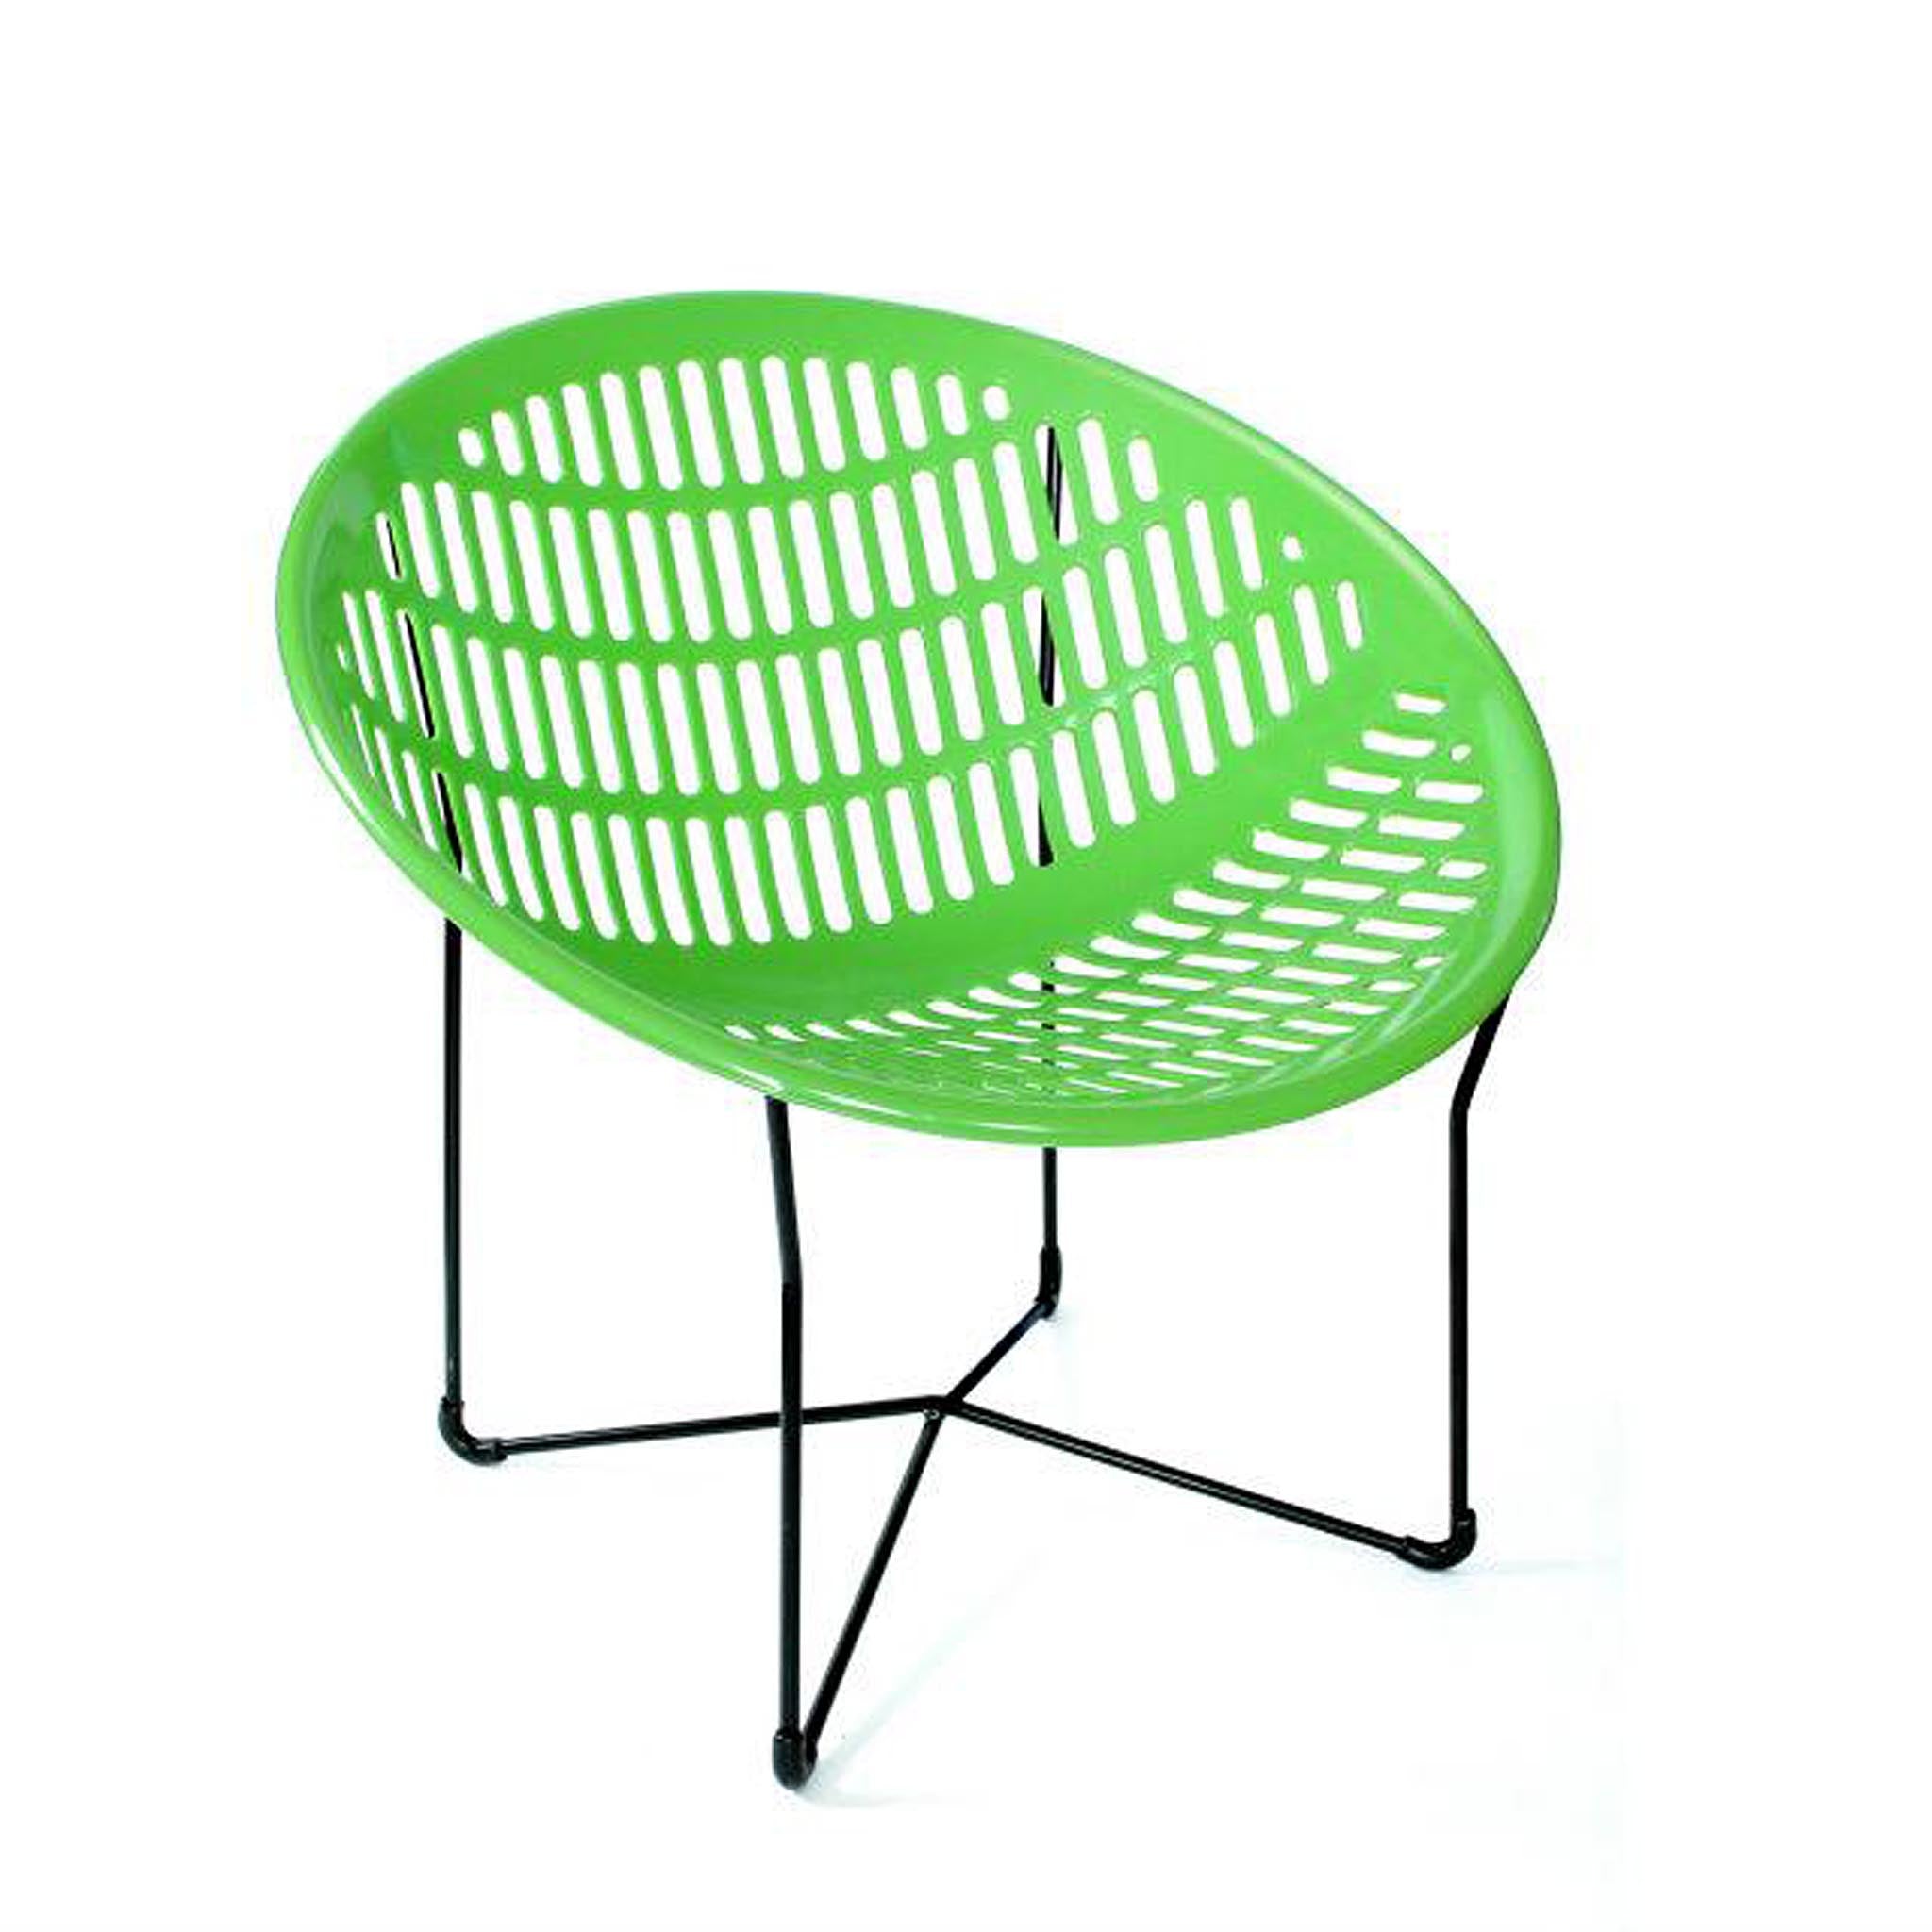 IEL-LaChance Solair Chair in green.